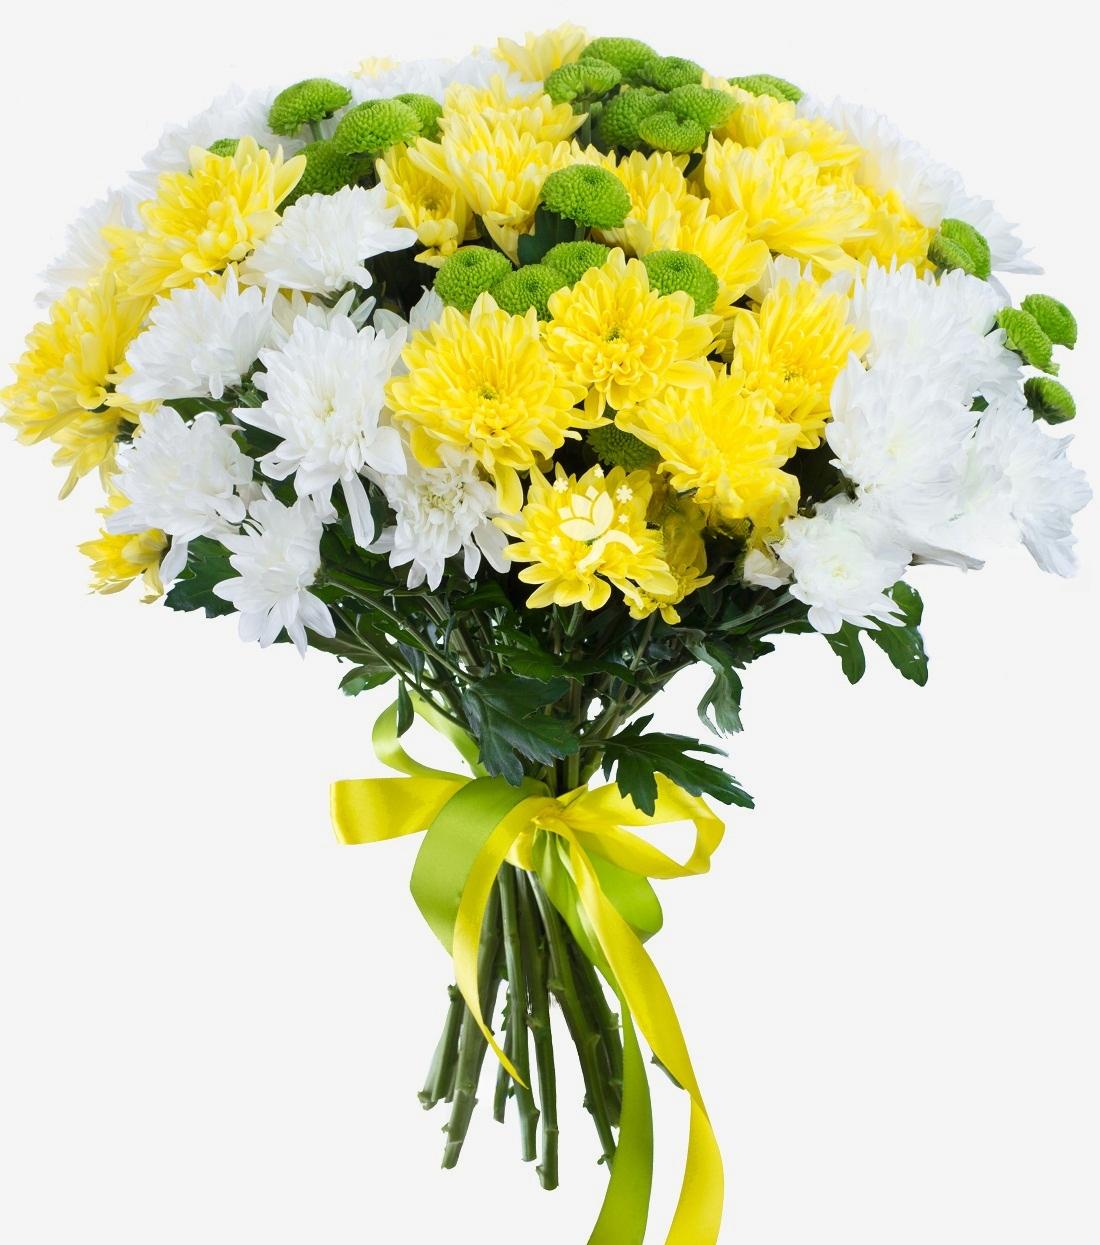 Mixed Chrysanthemum Bouquet